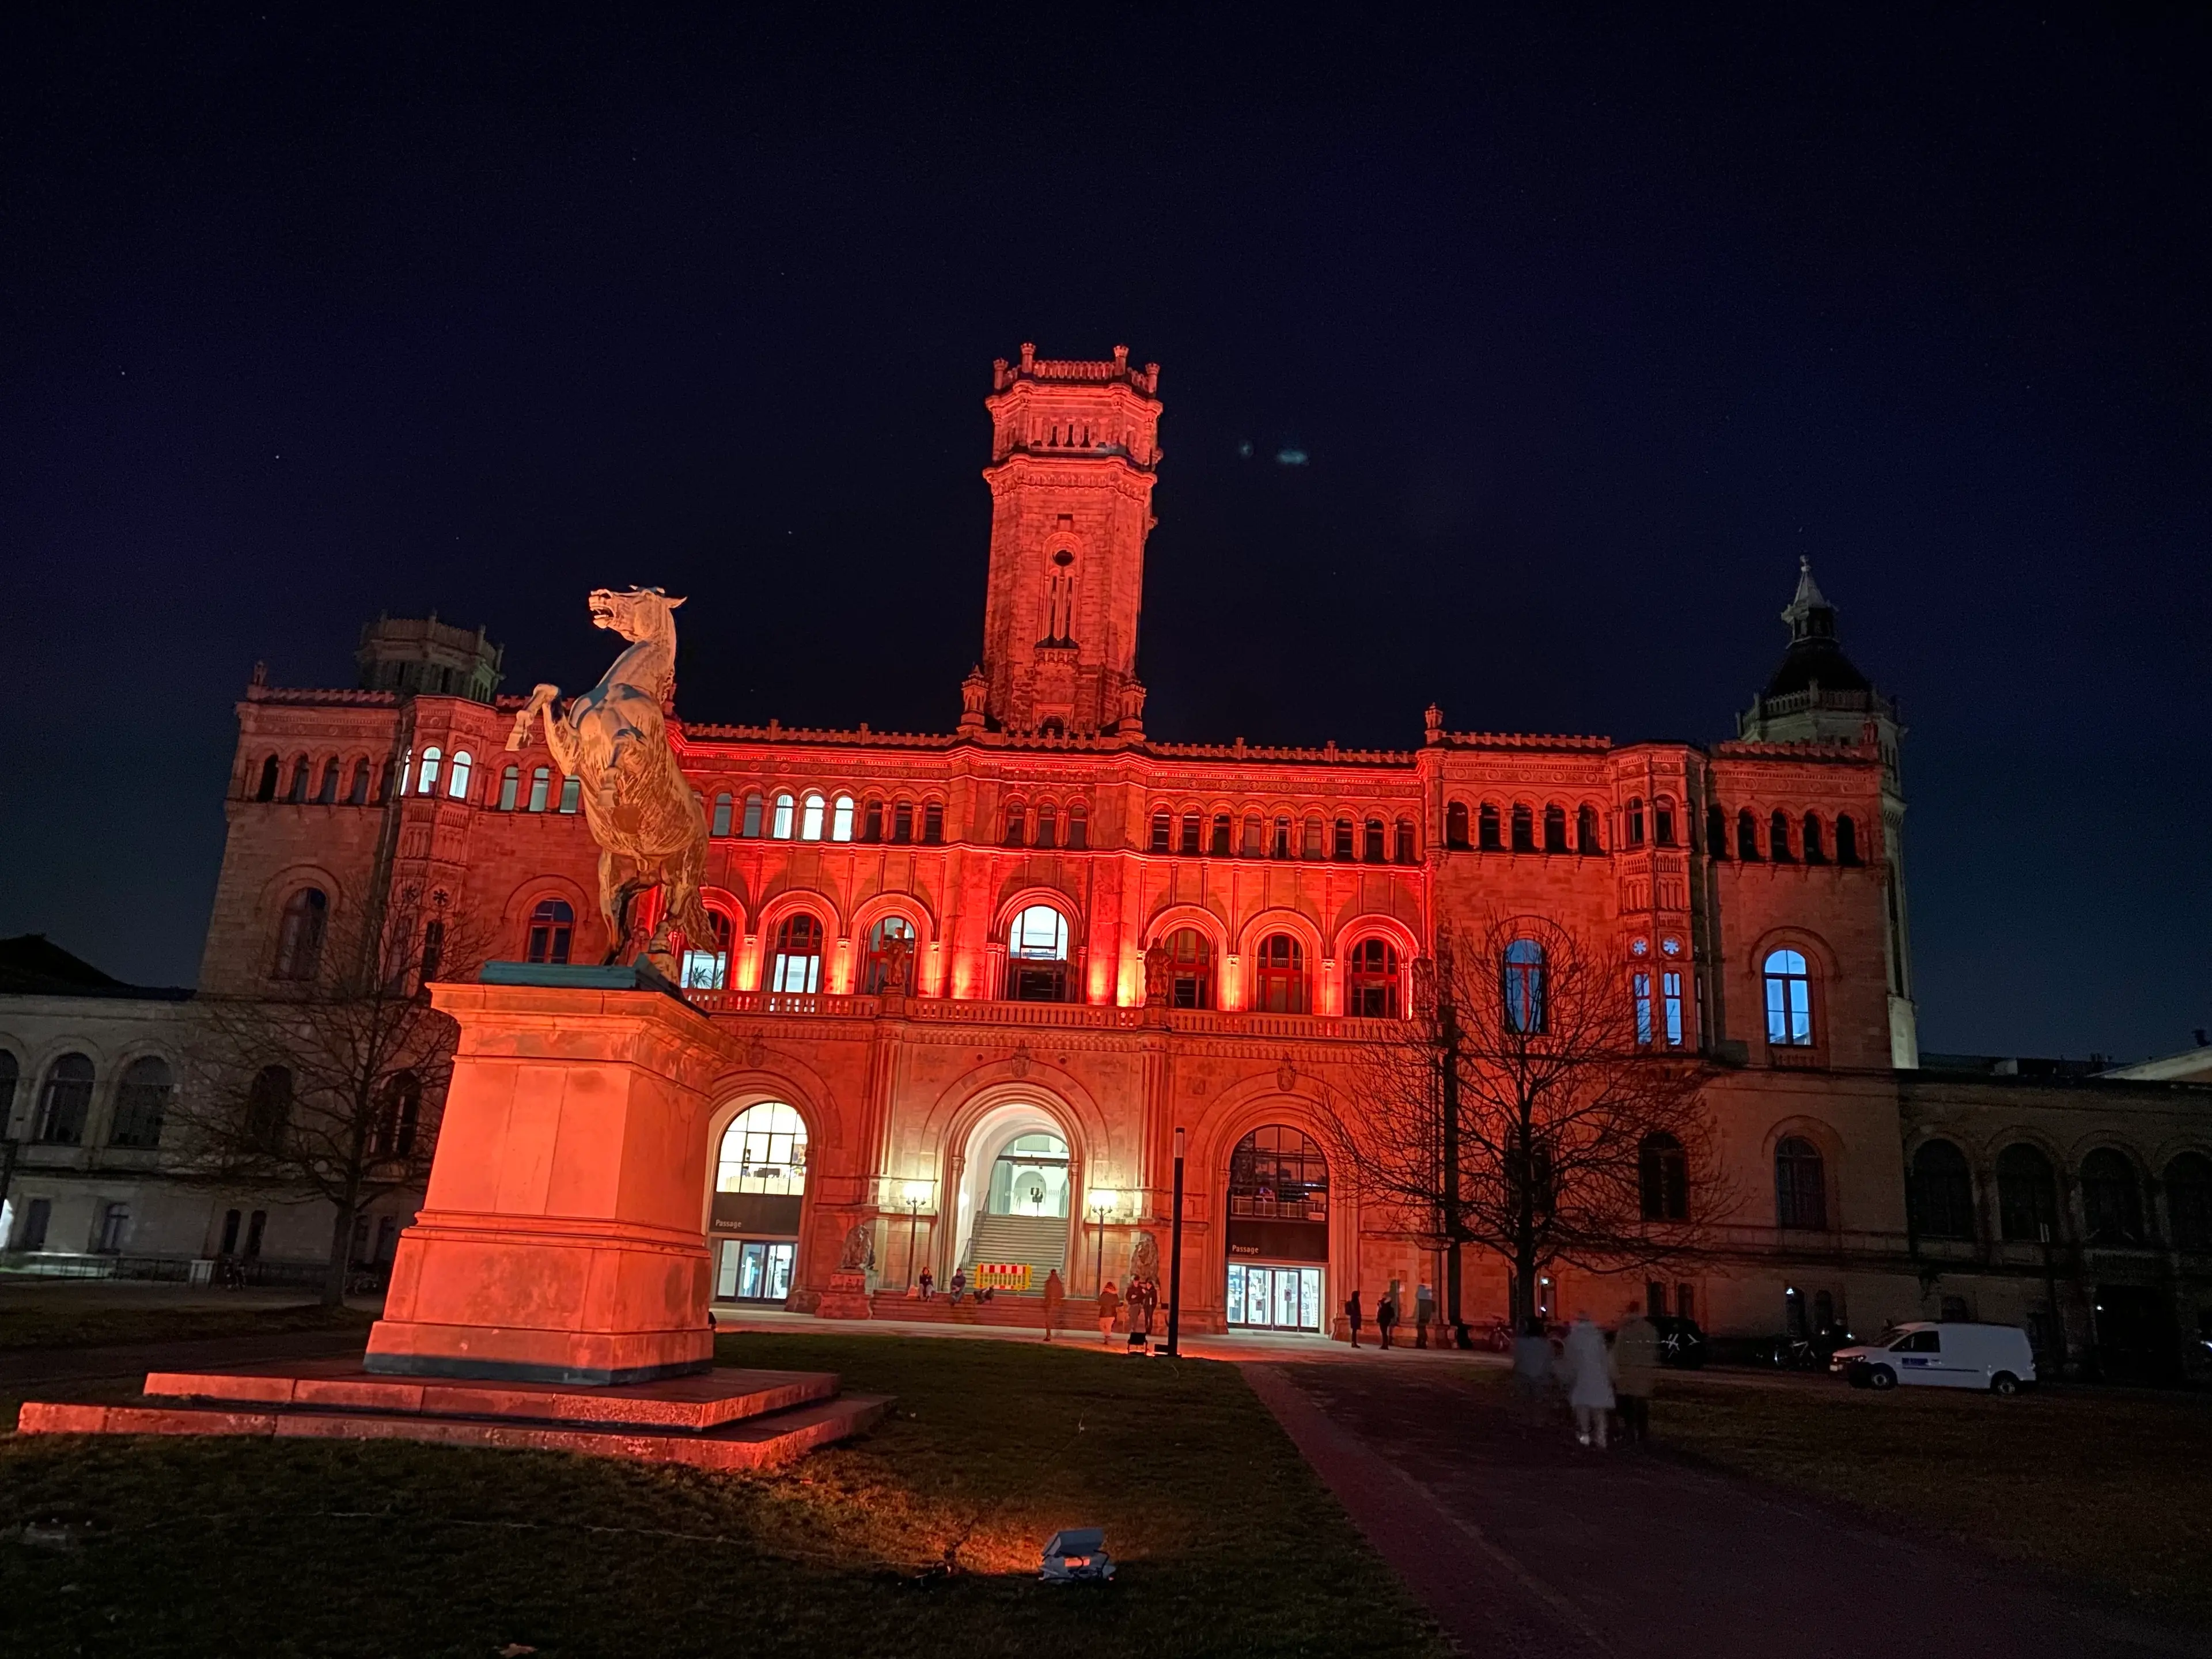 Dieses Bild zeigt die Leibniz Universität in Hannover, welche in orange angestrahlt wurde.